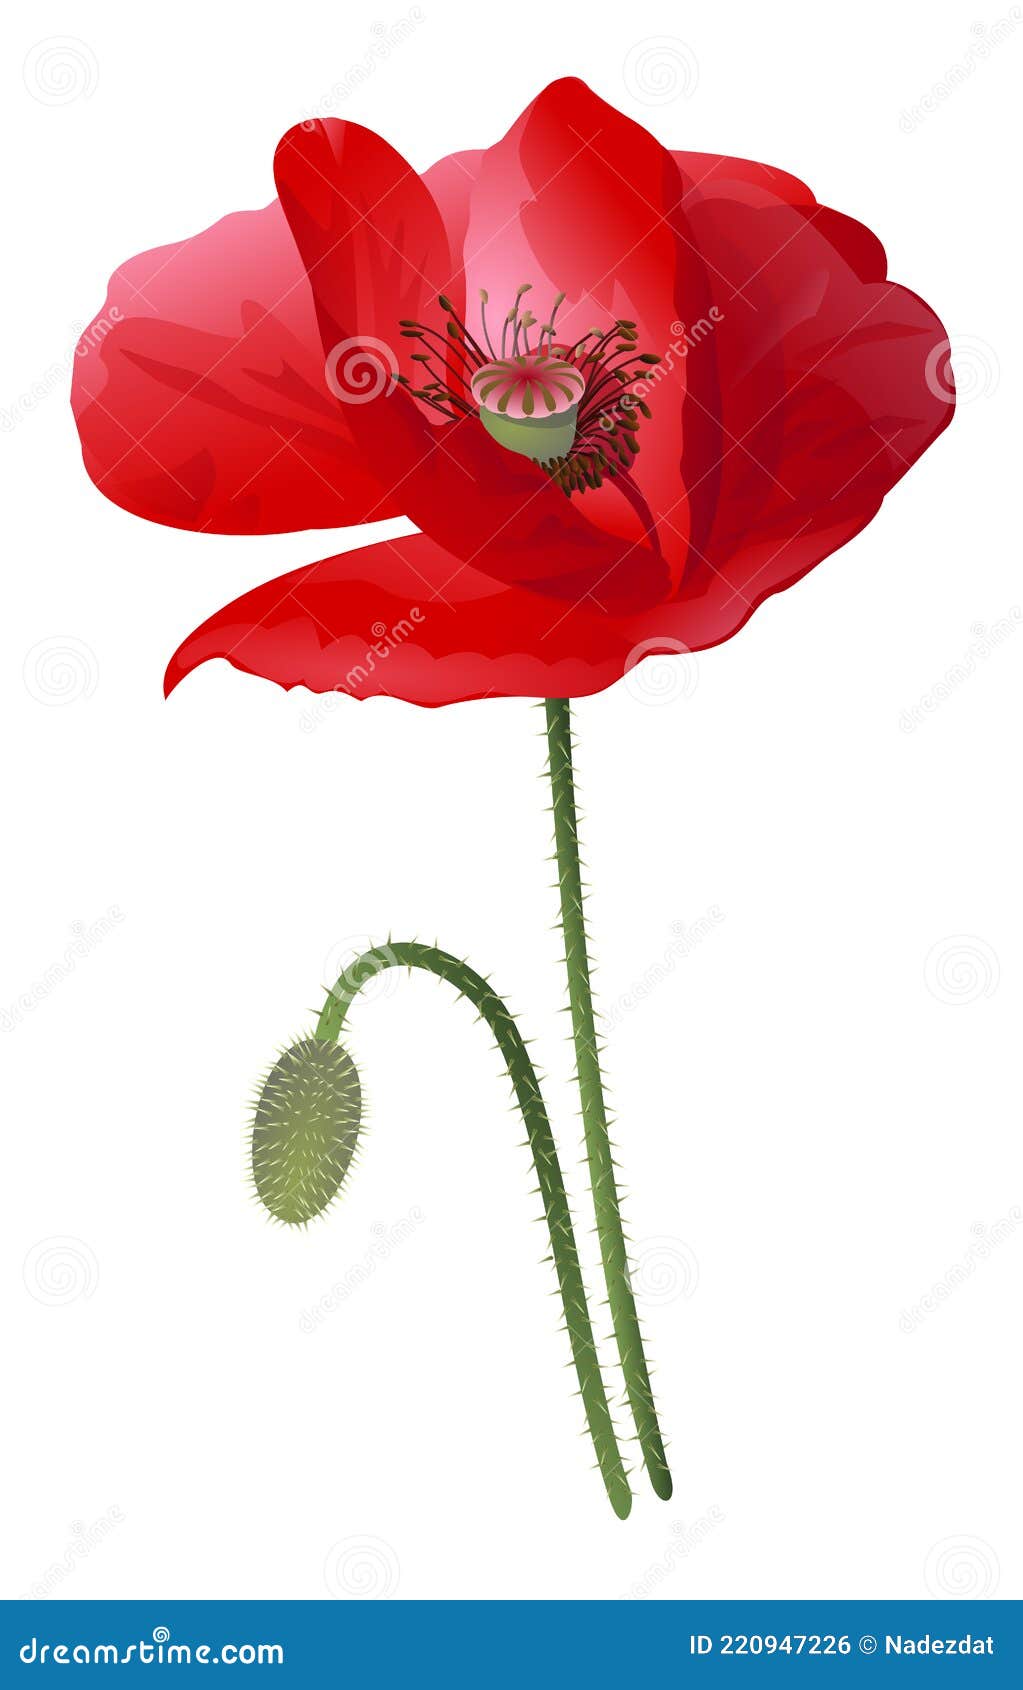 Red Poppy Flower Paint Style Illustration Stock Vector - Illustration ...